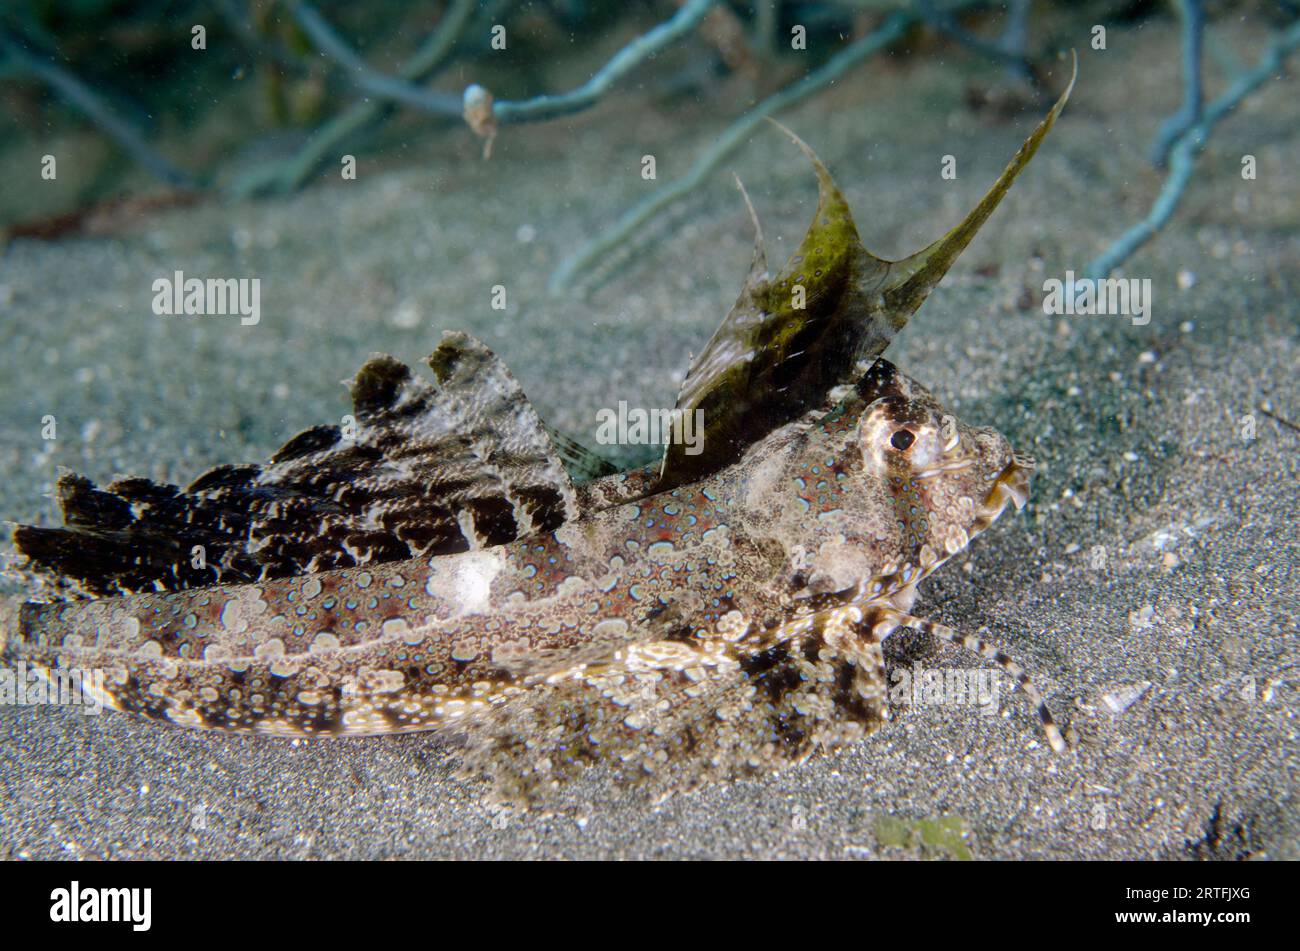 Dragonetto a dita, Dactylopus dactylopus, con spine dorsali filamentose, sito di immersione del molo, Pemuteran, Buleleng Regency, Bali, Indonesia Foto Stock